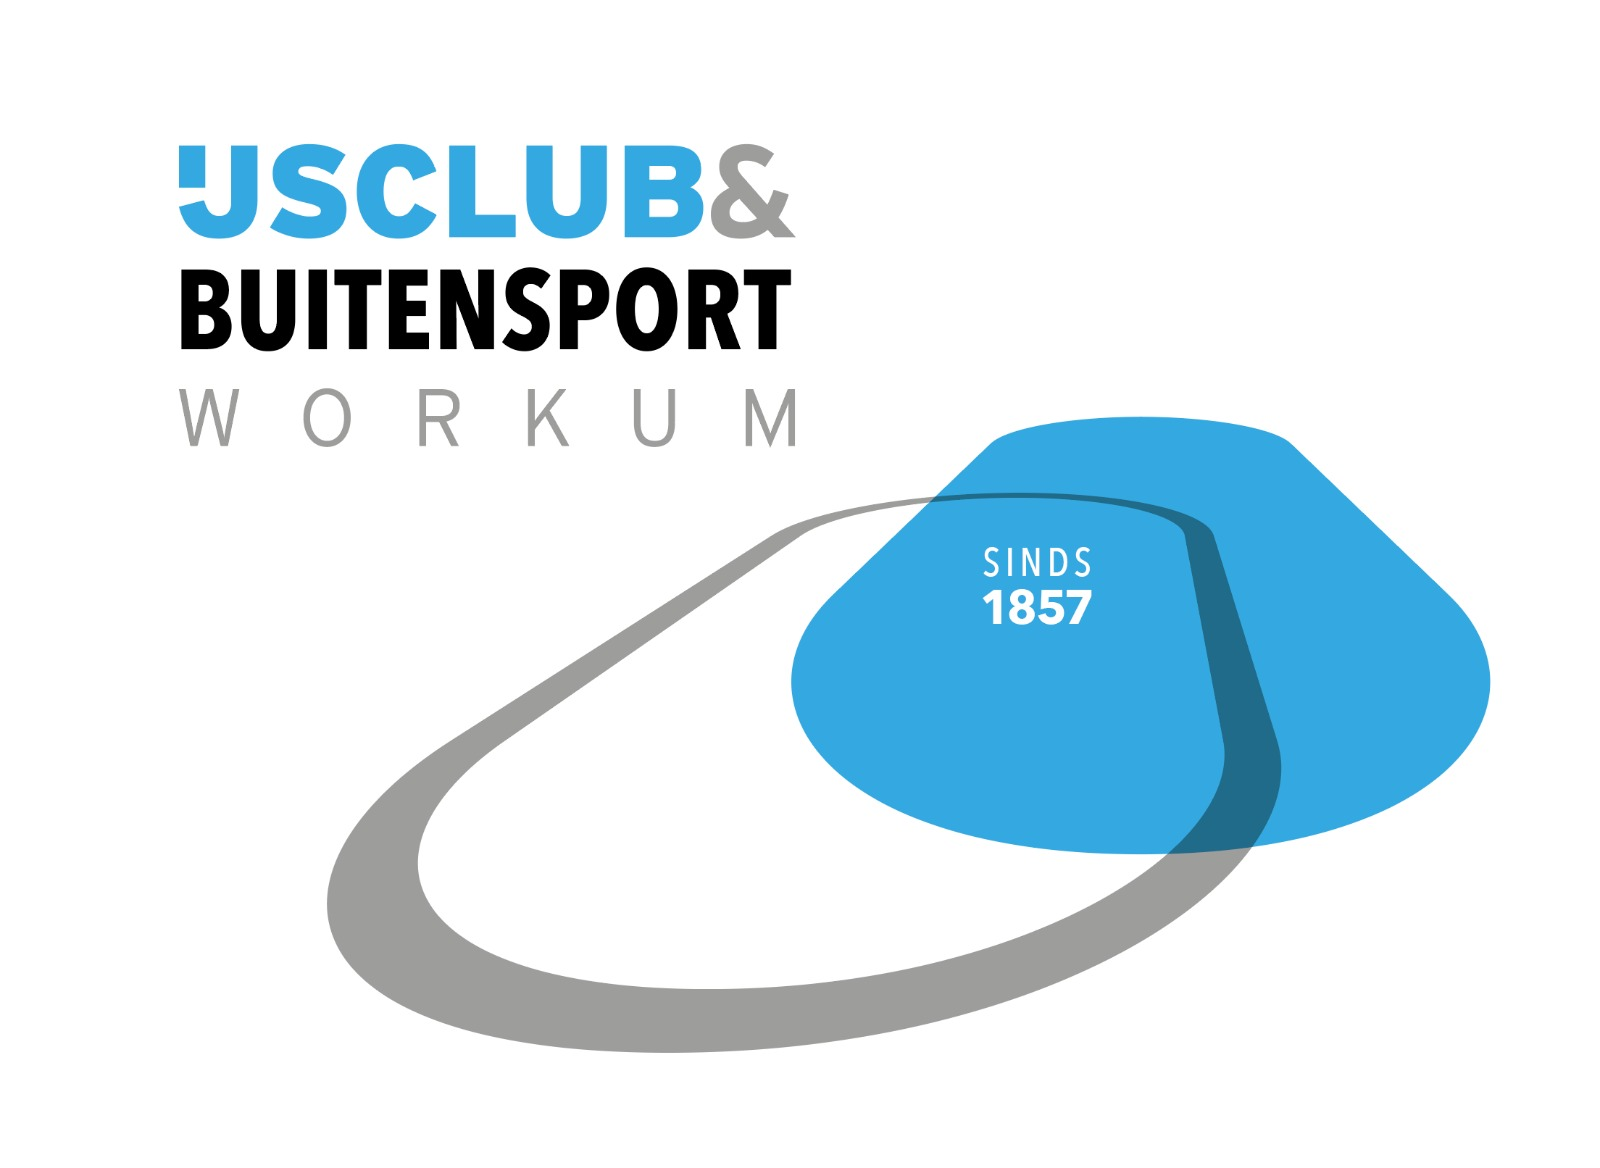 IJsclub & Buitensport Workum